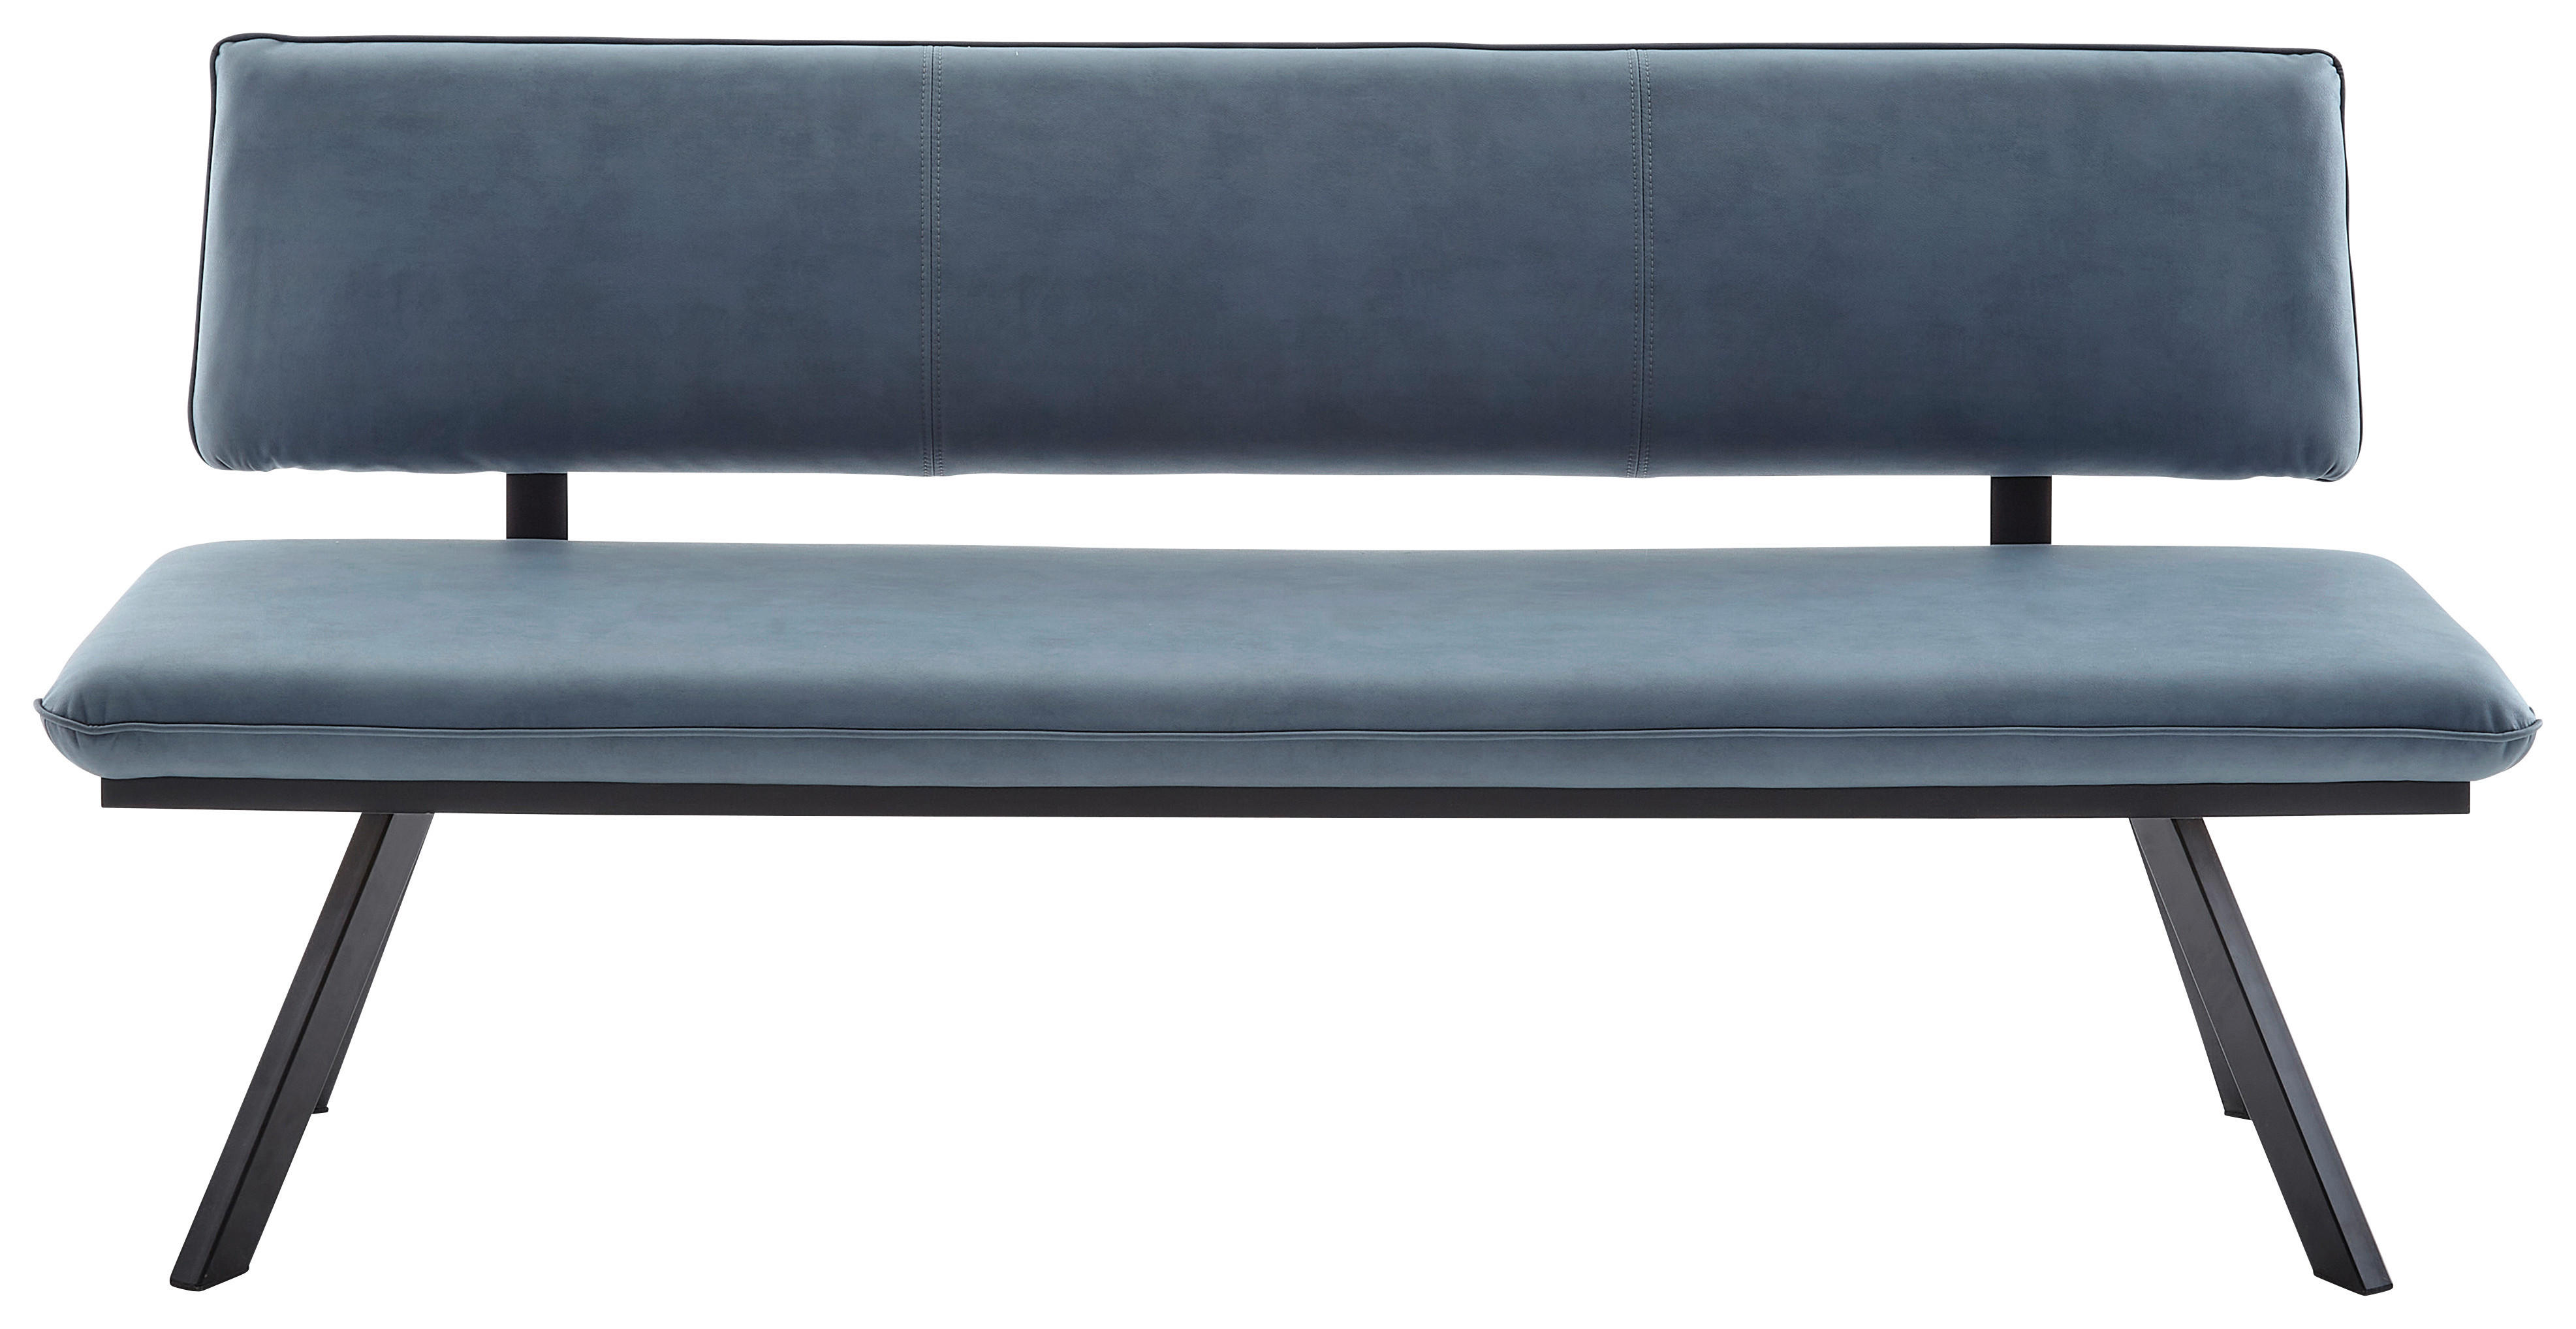 SITZBANK 140/86/60 cm beschichtet Schwarz, Hellblau  - Schwarz/Hellblau, MODERN, Textil/Metall (140/86/60cm) - Cantus